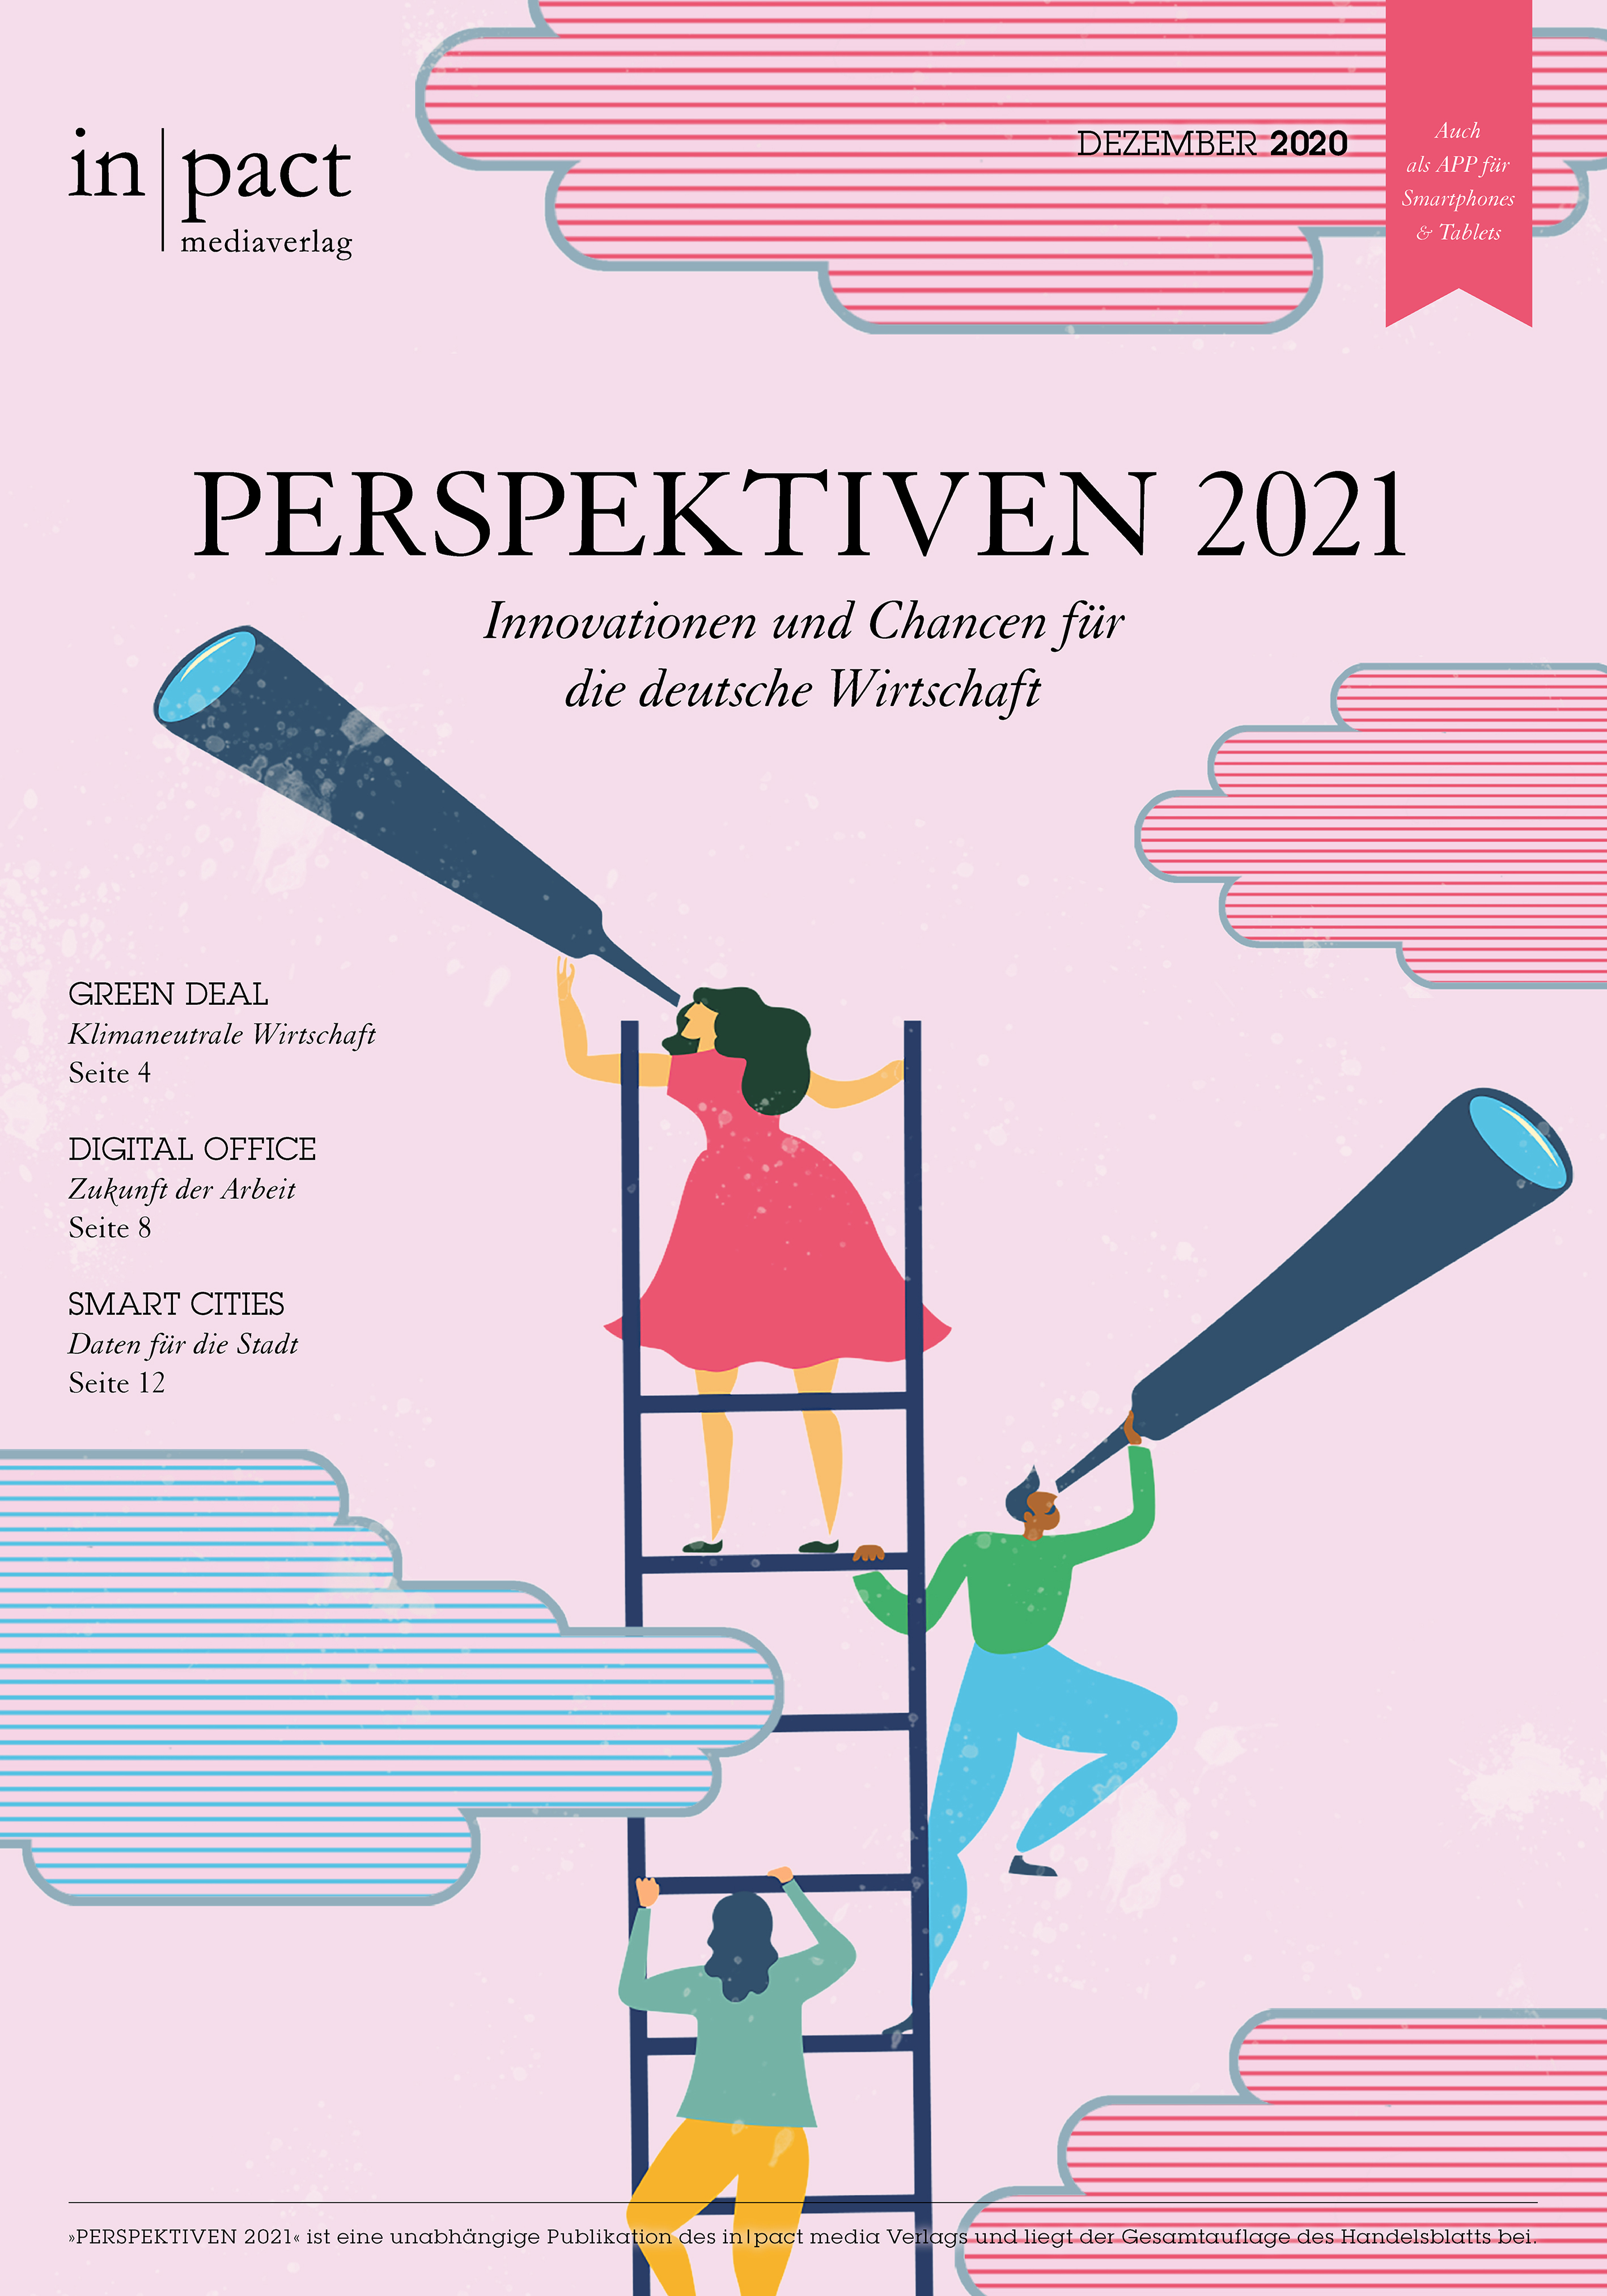 Perspektiven 2021 – Innovationen und Chancen für die deutsche Wirtschaft